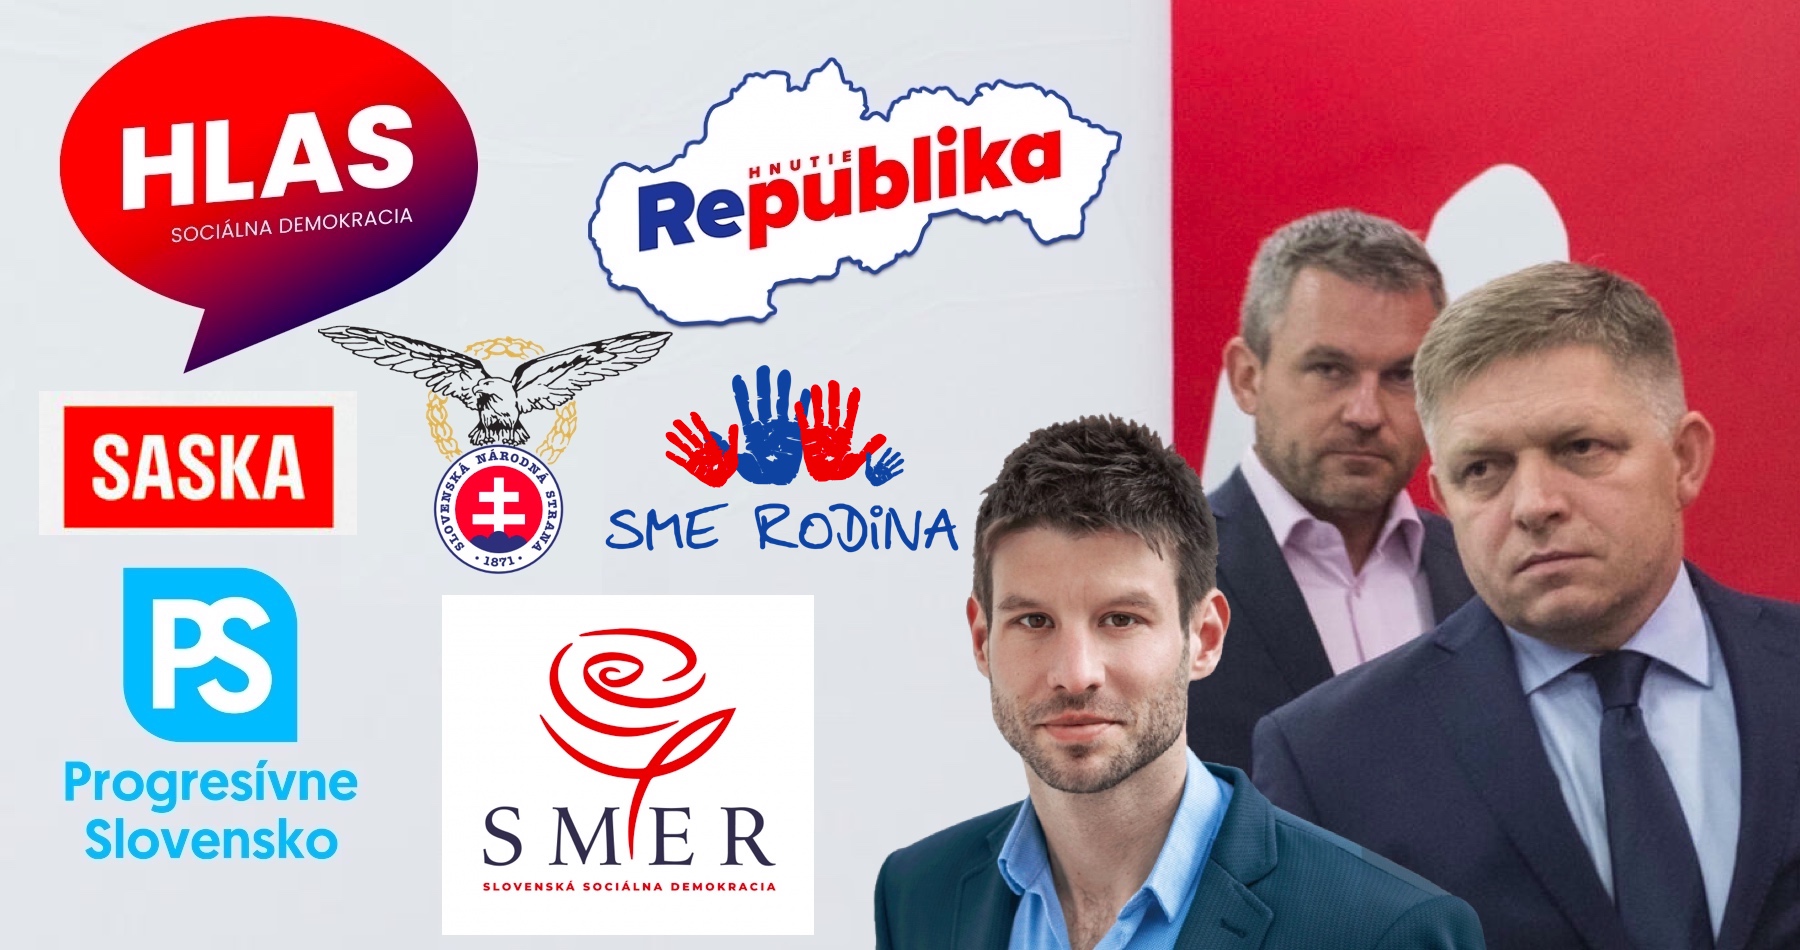 VIDEO: Fico je najobľúbenejším politikom na Slovensku. Podľa najnovšieho prieskumu by Smeru po dohode s Hlasom stačila na vládnutie ešte jedna strana. Šéfa Smeru preferuje väčšina ľudí aj ako budúceho premiéra. Fico však varoval, že Pellegrini je ochotný spojiť sa s progresívcami len preto, aby šéfoval budúcej vláde. Upozornil tiež, aké riziká by pre Slovensko takáto garnitúra predstavovala